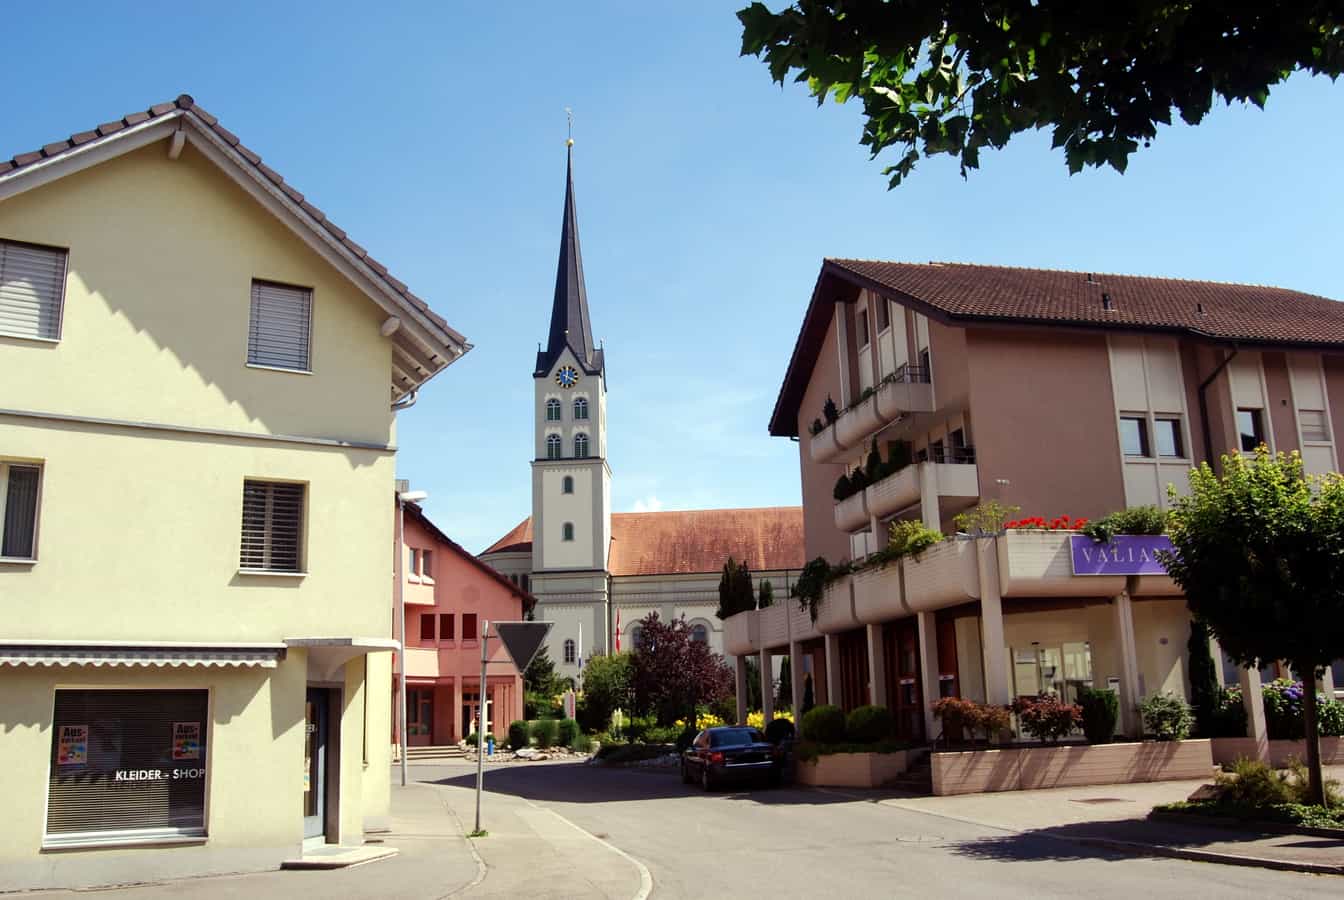 Dorfzentrum von Schötz an der Ohmstalerstrasse mit Kirche, Kleiderladen und Bank